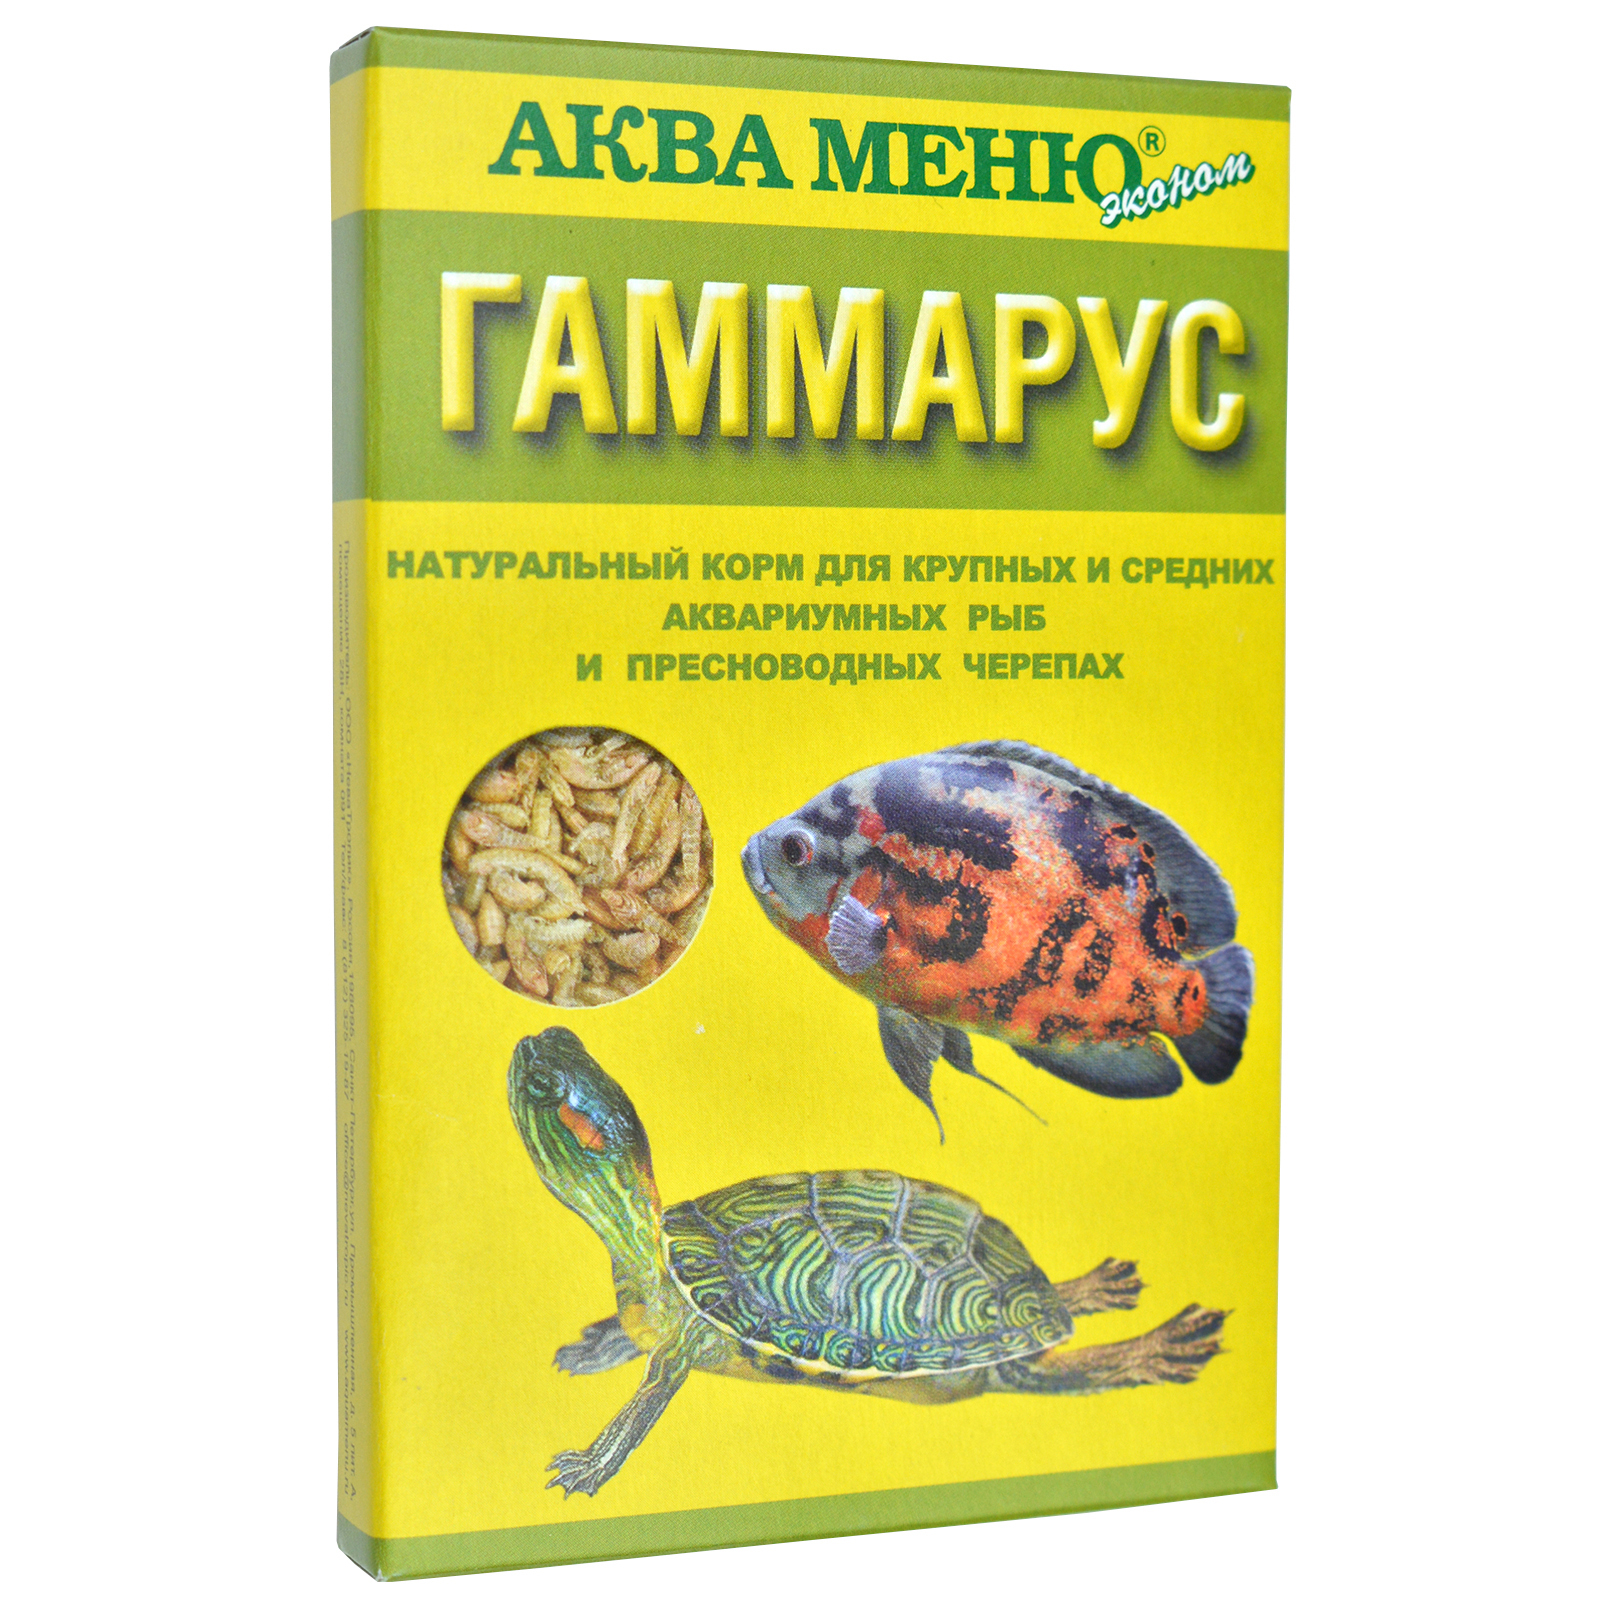 Гаммарус - полезный корм для рыб | Информация и рекомендации